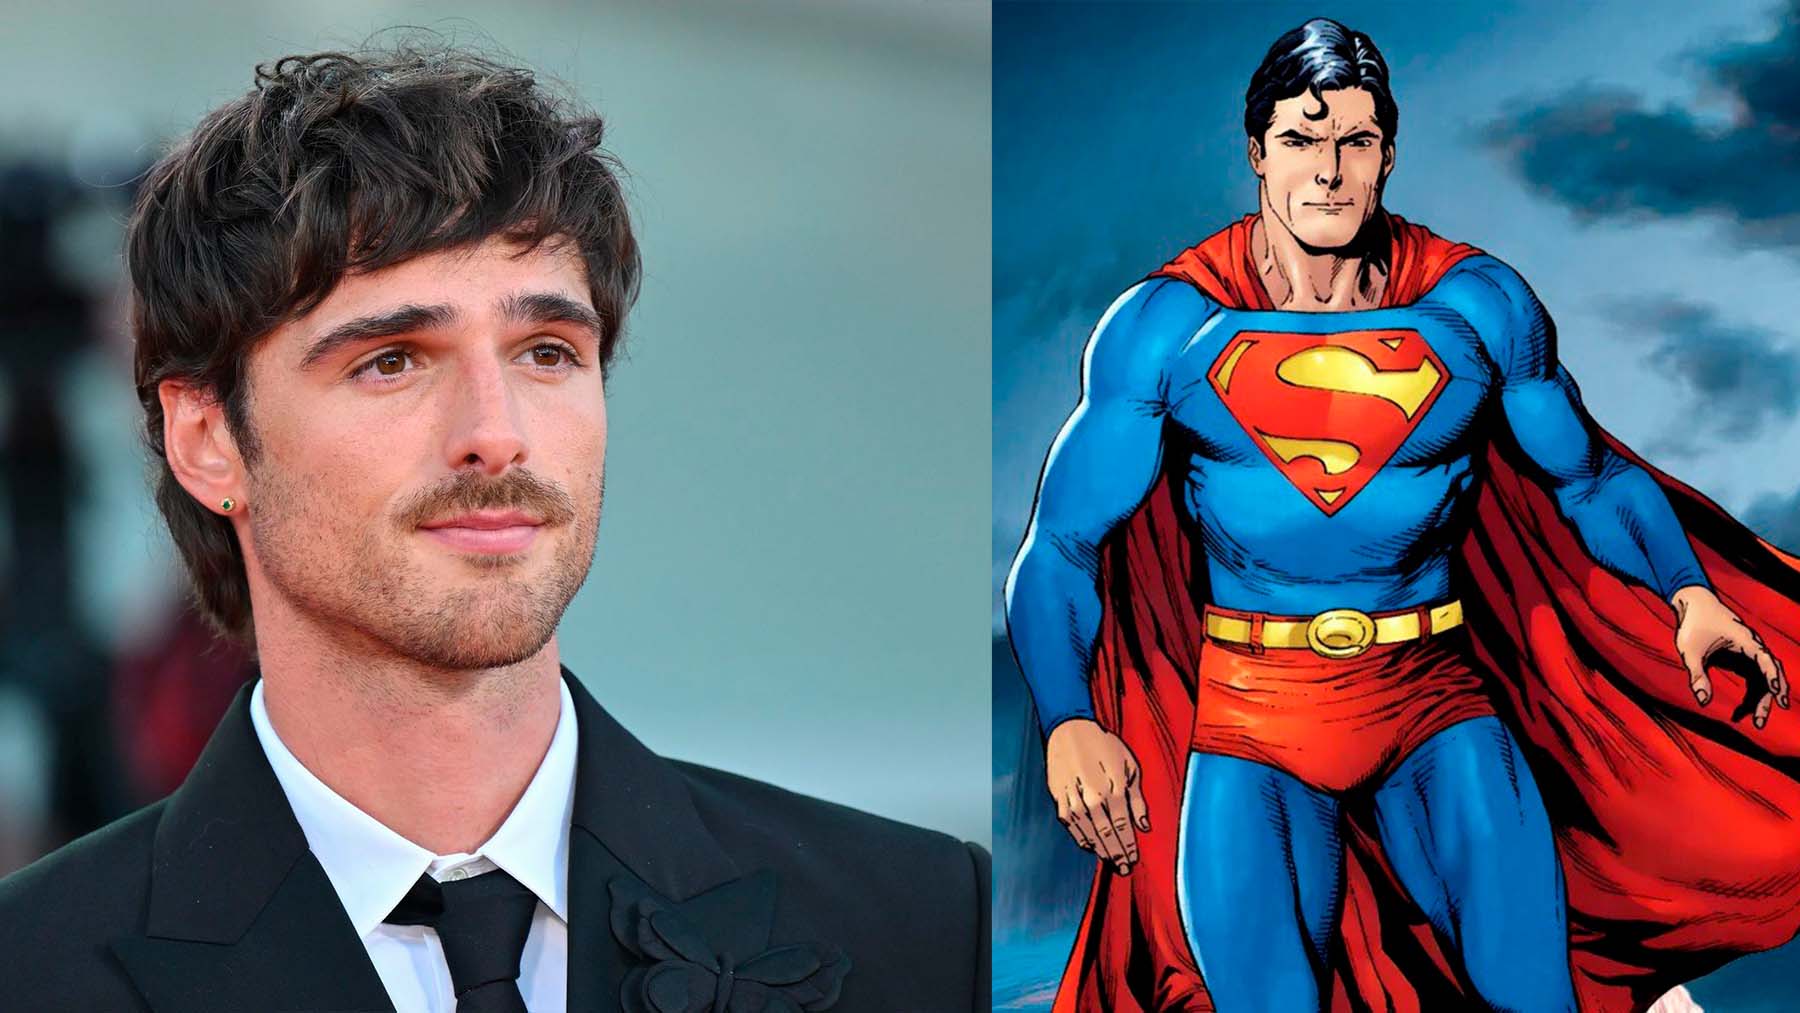 Jacob Elordi rechazó participar el casting de la nueva película de Superman